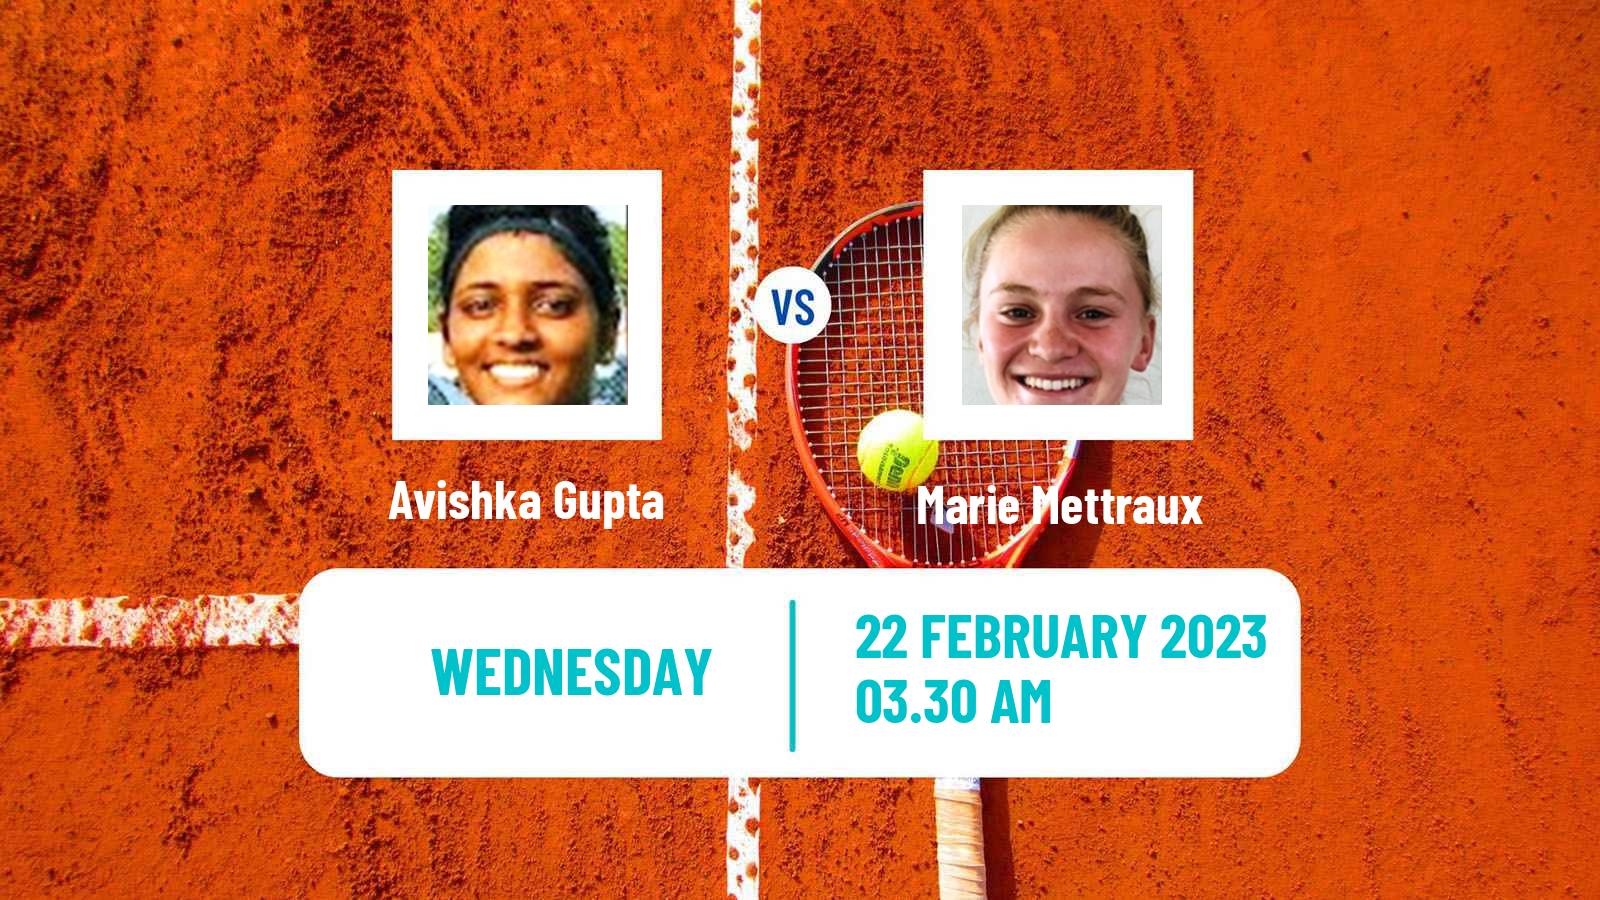 Tennis ITF Tournaments Avishka Gupta - Marie Mettraux